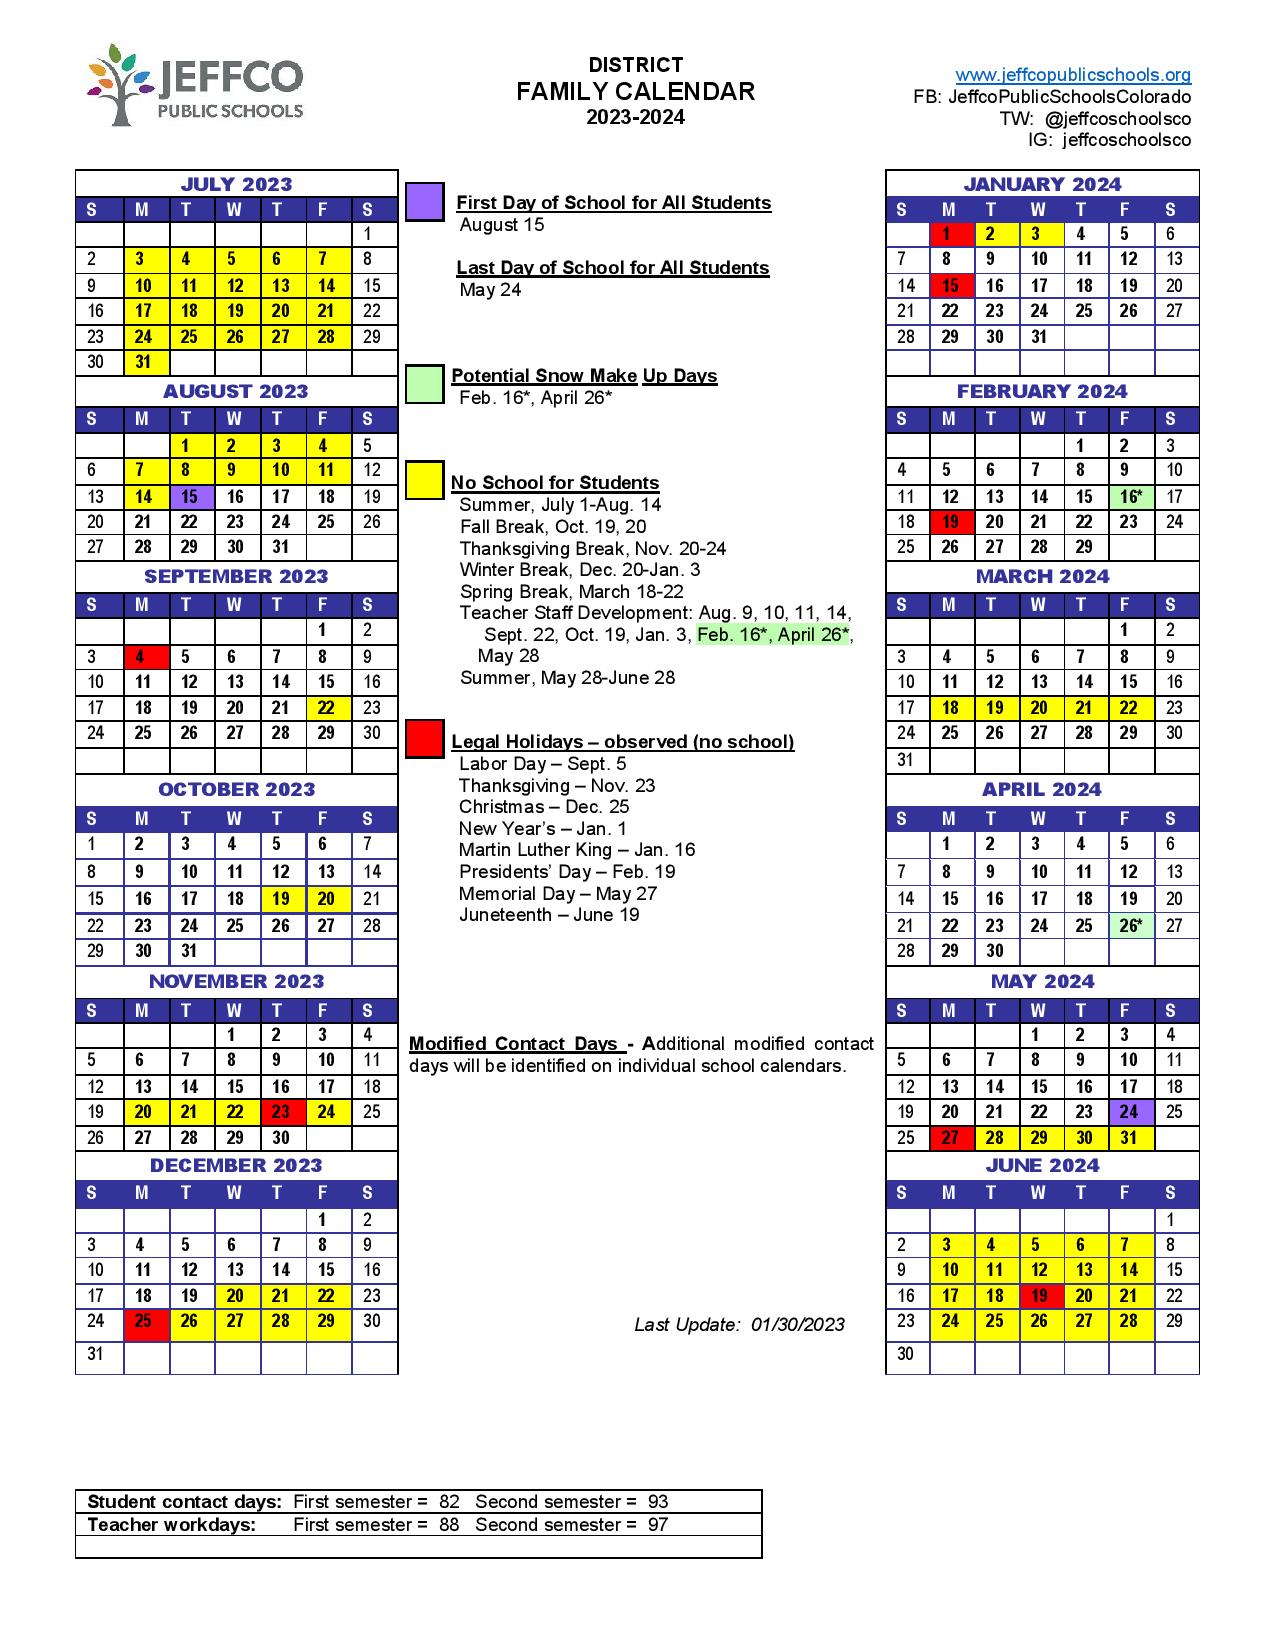 School Calendar 2024 Brooklyn Seka Estella